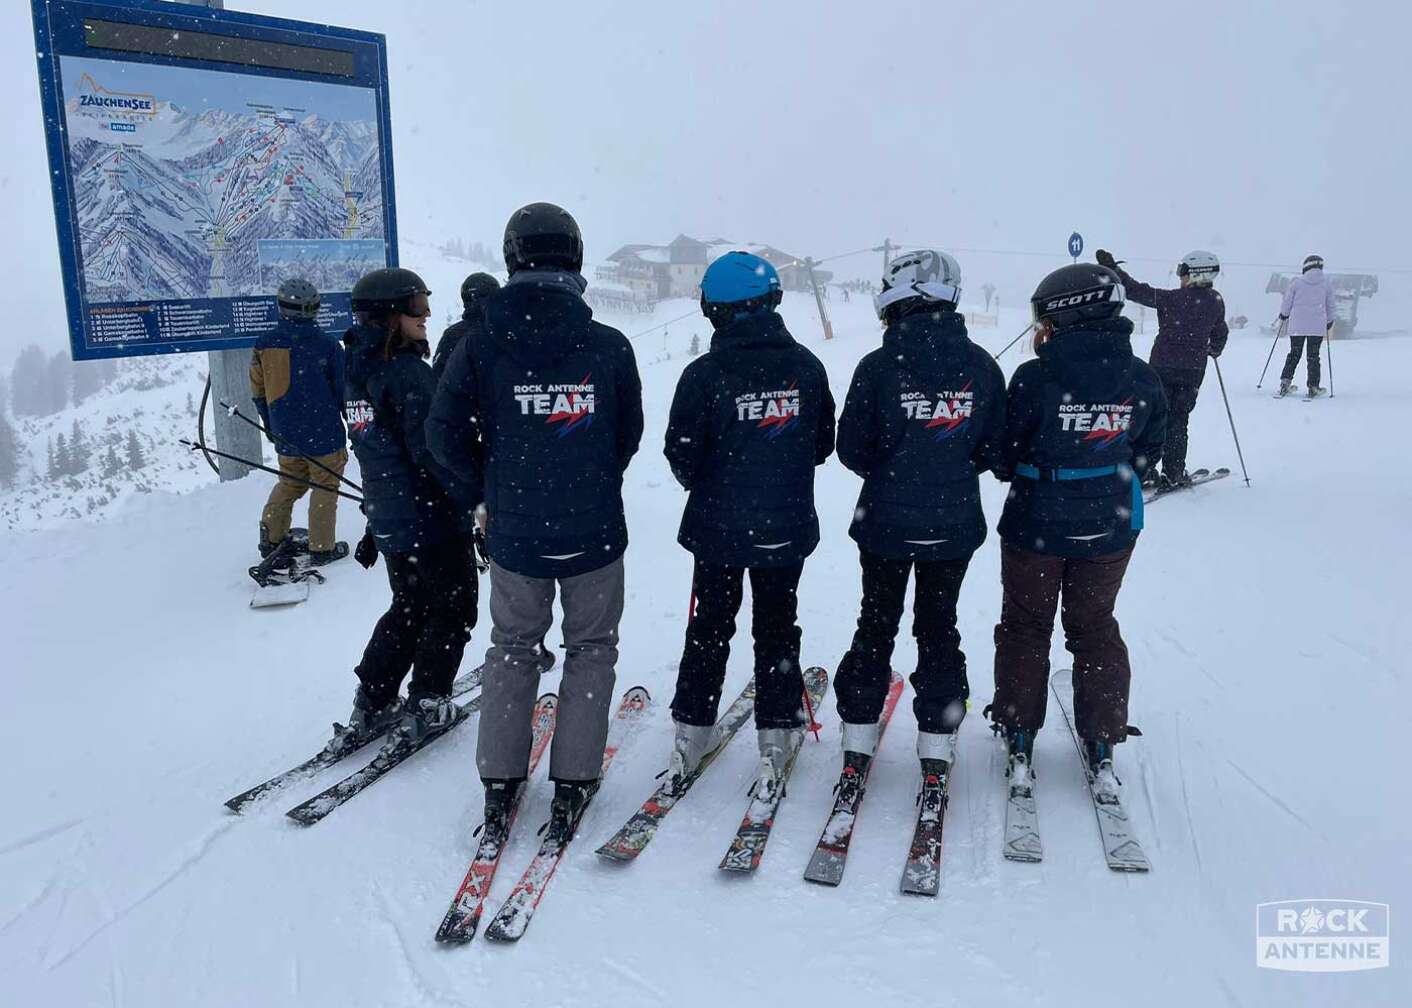 Foto der ROCK ANTENNE Tagesskifahrt Rock the Mountain 2023 in die Weltcuparena Zauchensee - Eine Gruppe Skifahrer von hinten fotografiert mit "ROCK ANTENNE Team"-Aufdruck auf der Jacke